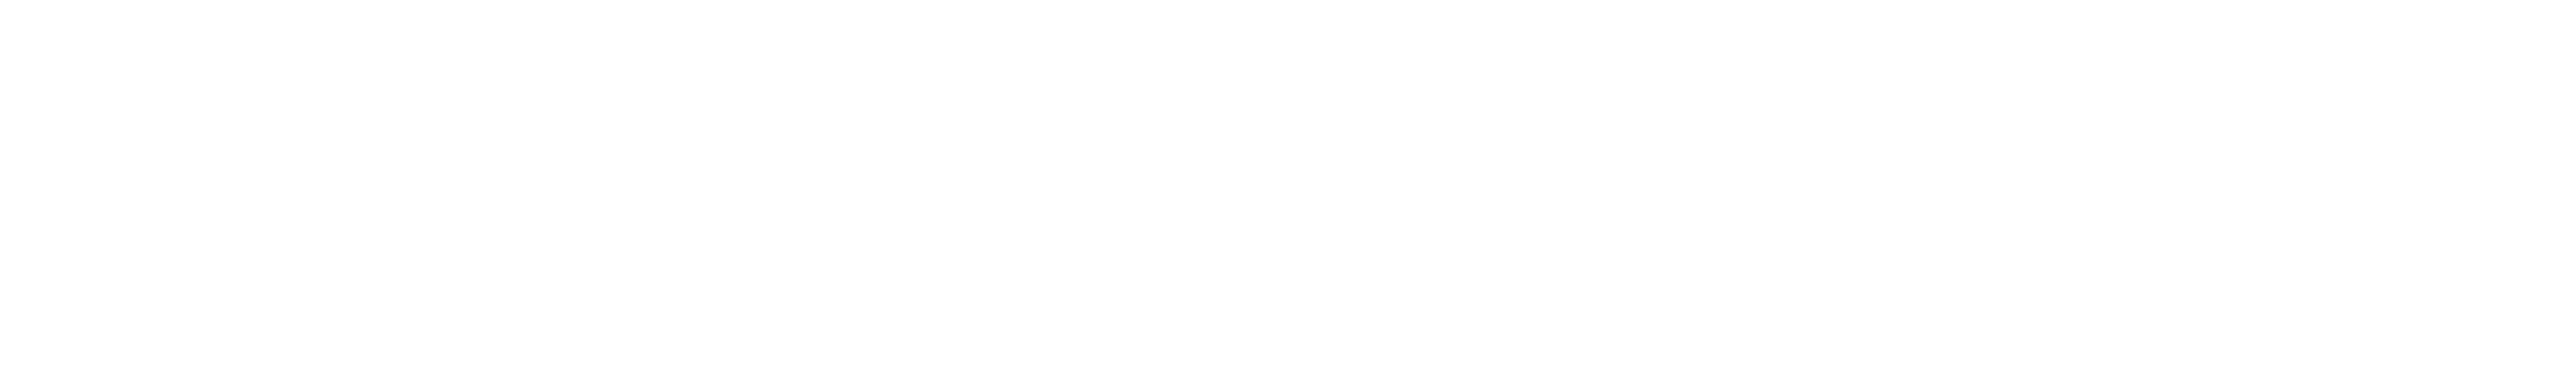 regua-de-logos-museu-india-vanuire-governo-sp